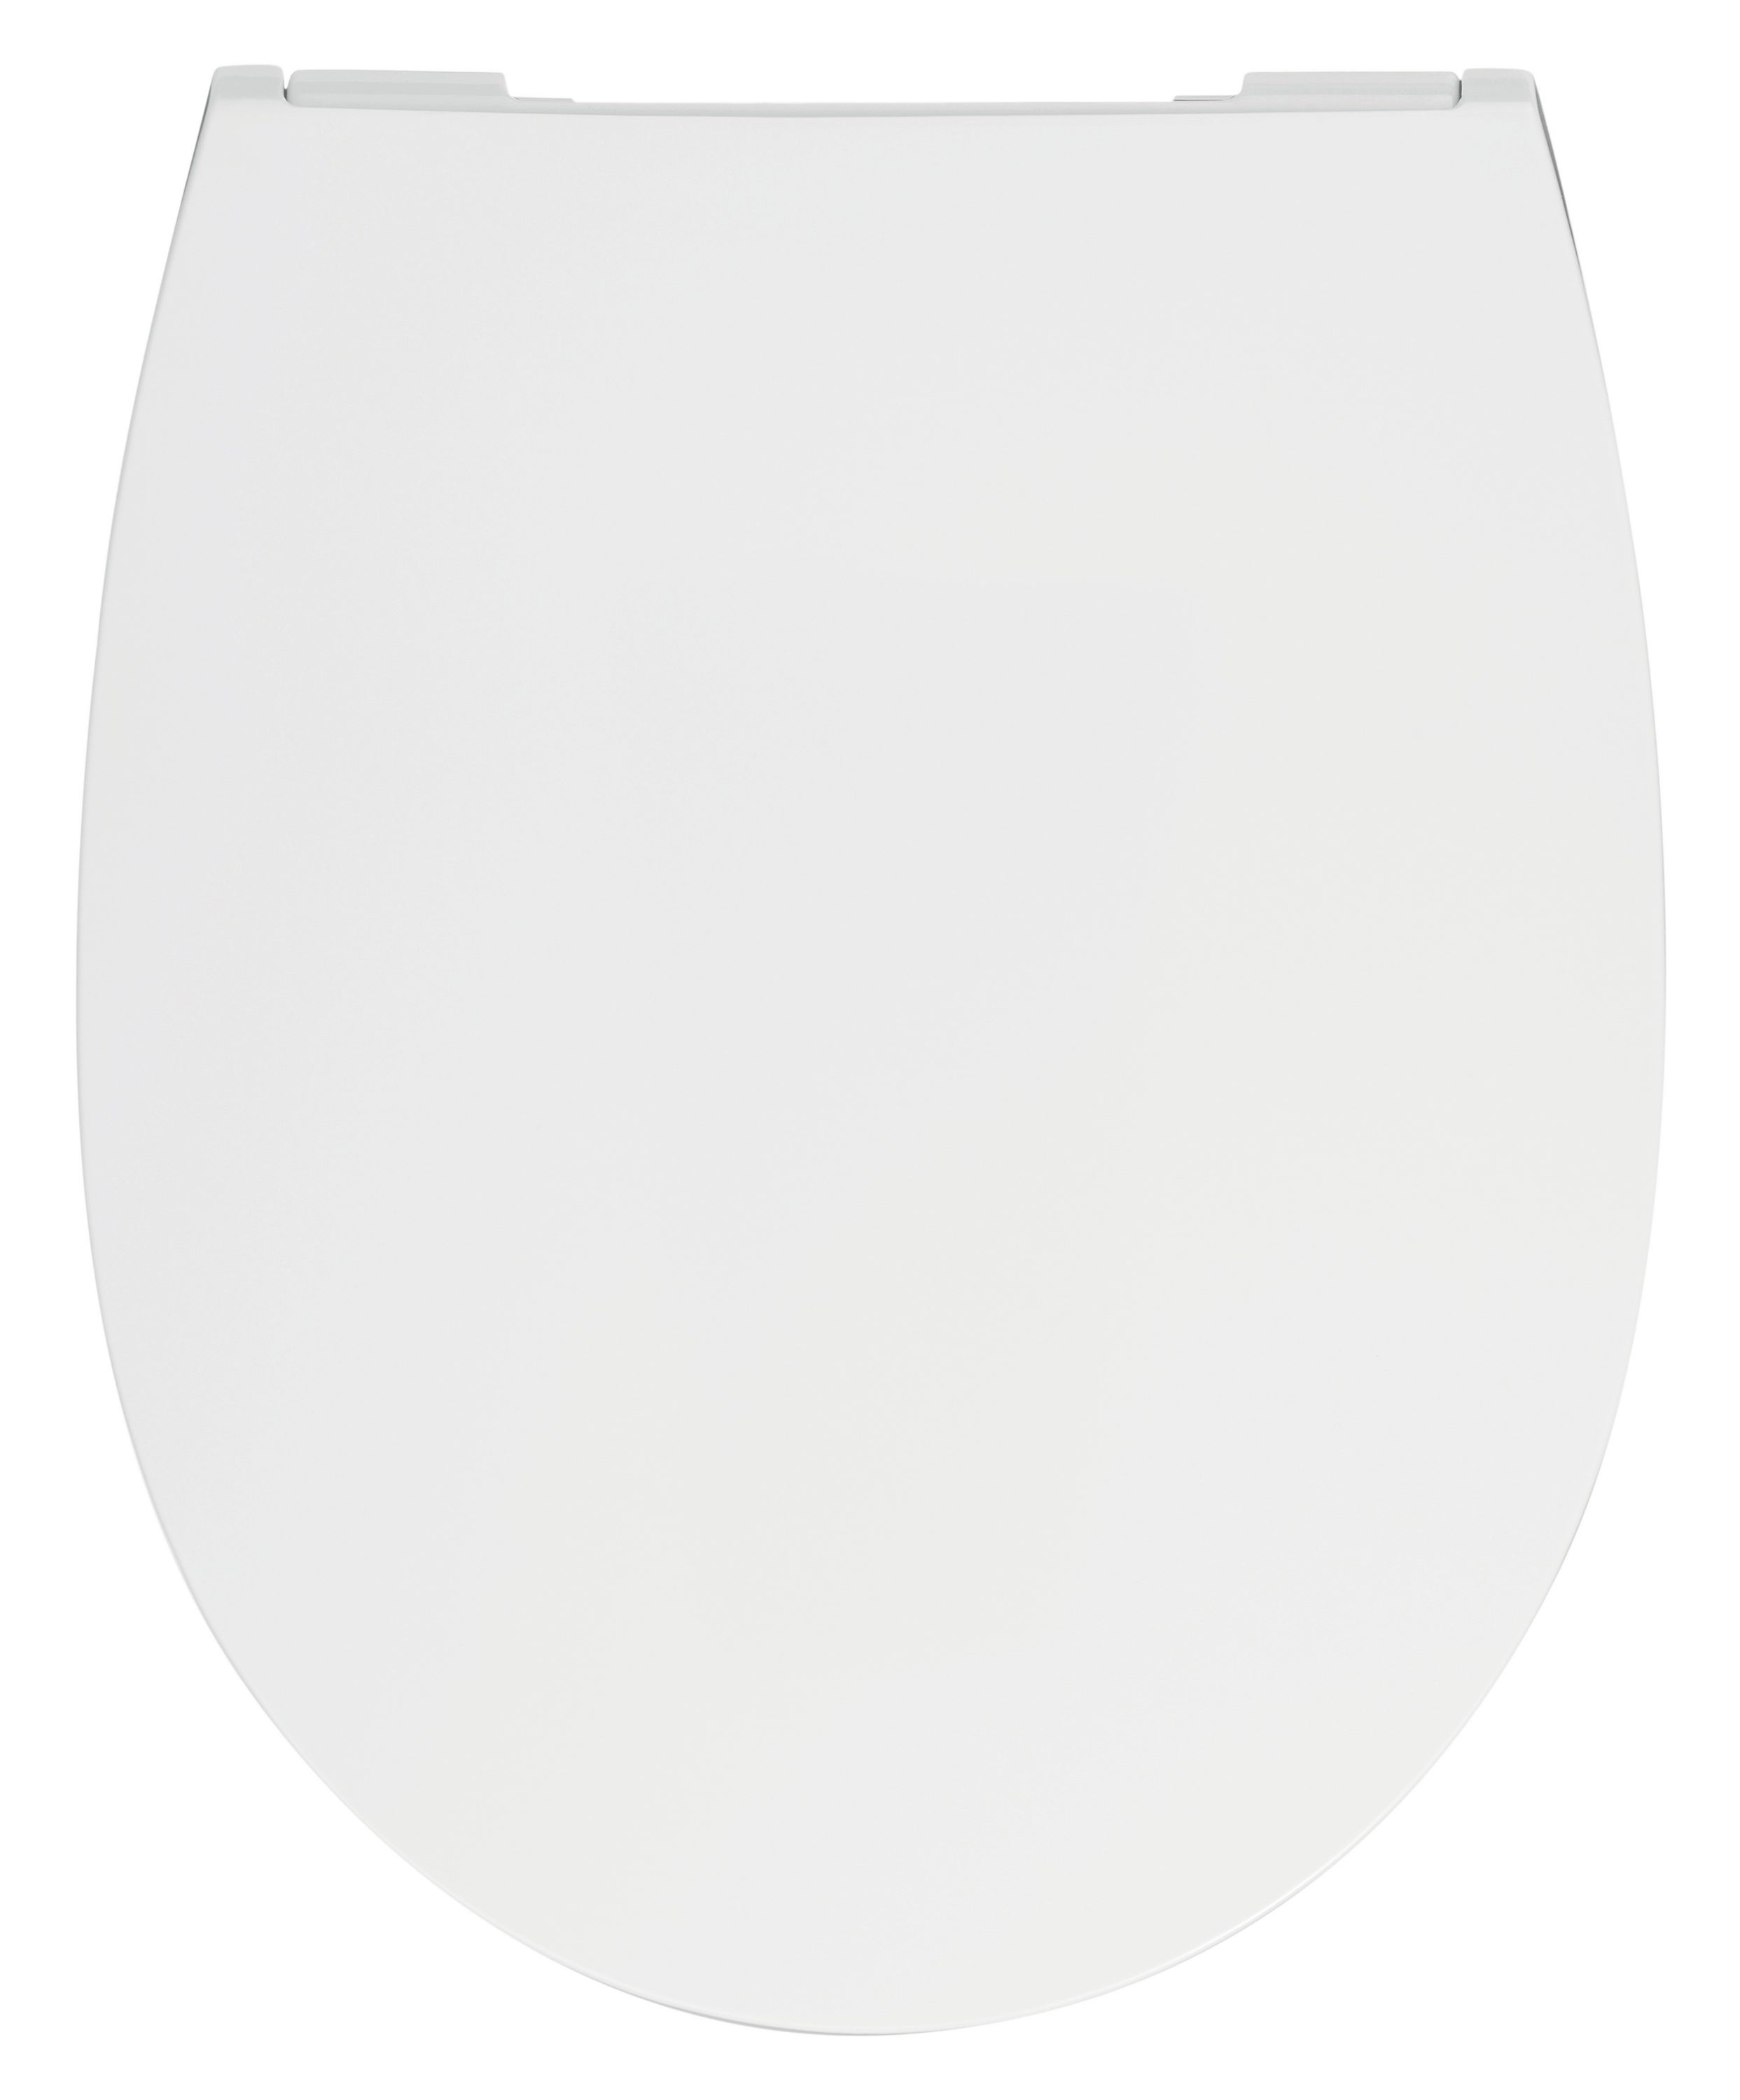 WC-Sitz mit Absenkautomatik 26LP3163 in Weiß, flach, abnehmbar aus Duroplast mit Edelstahlscharnier